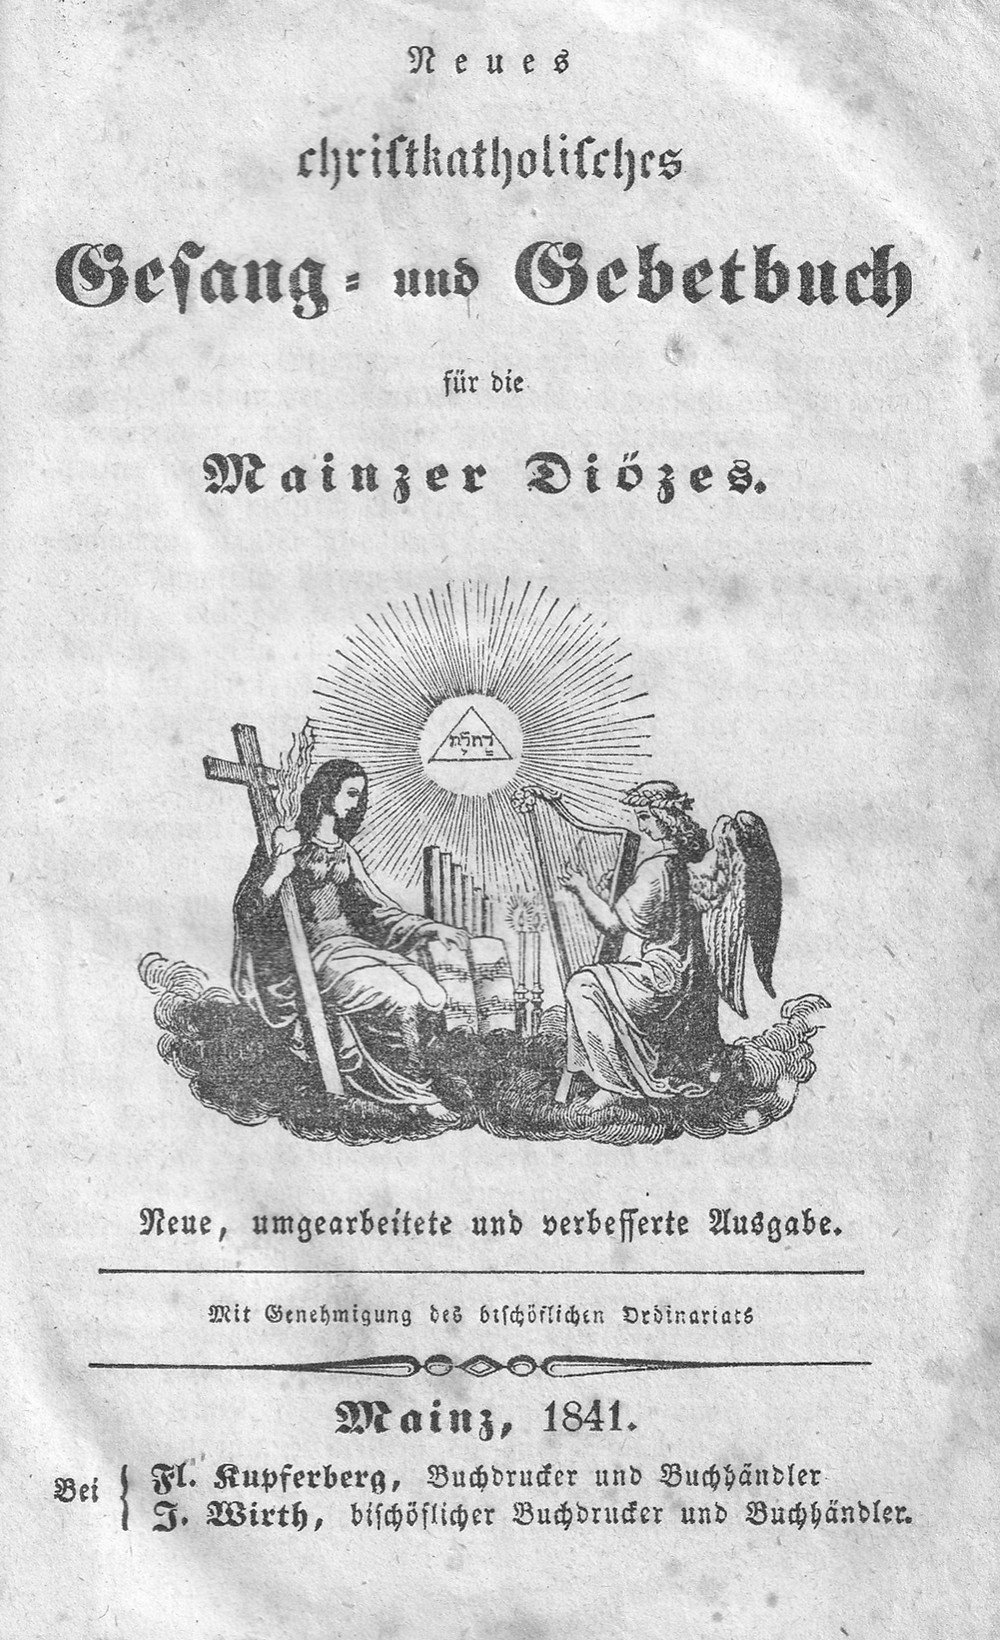 Neues christkatholisches Gesangbuch (Kulturverein Guntersblum CC BY-NC-SA)